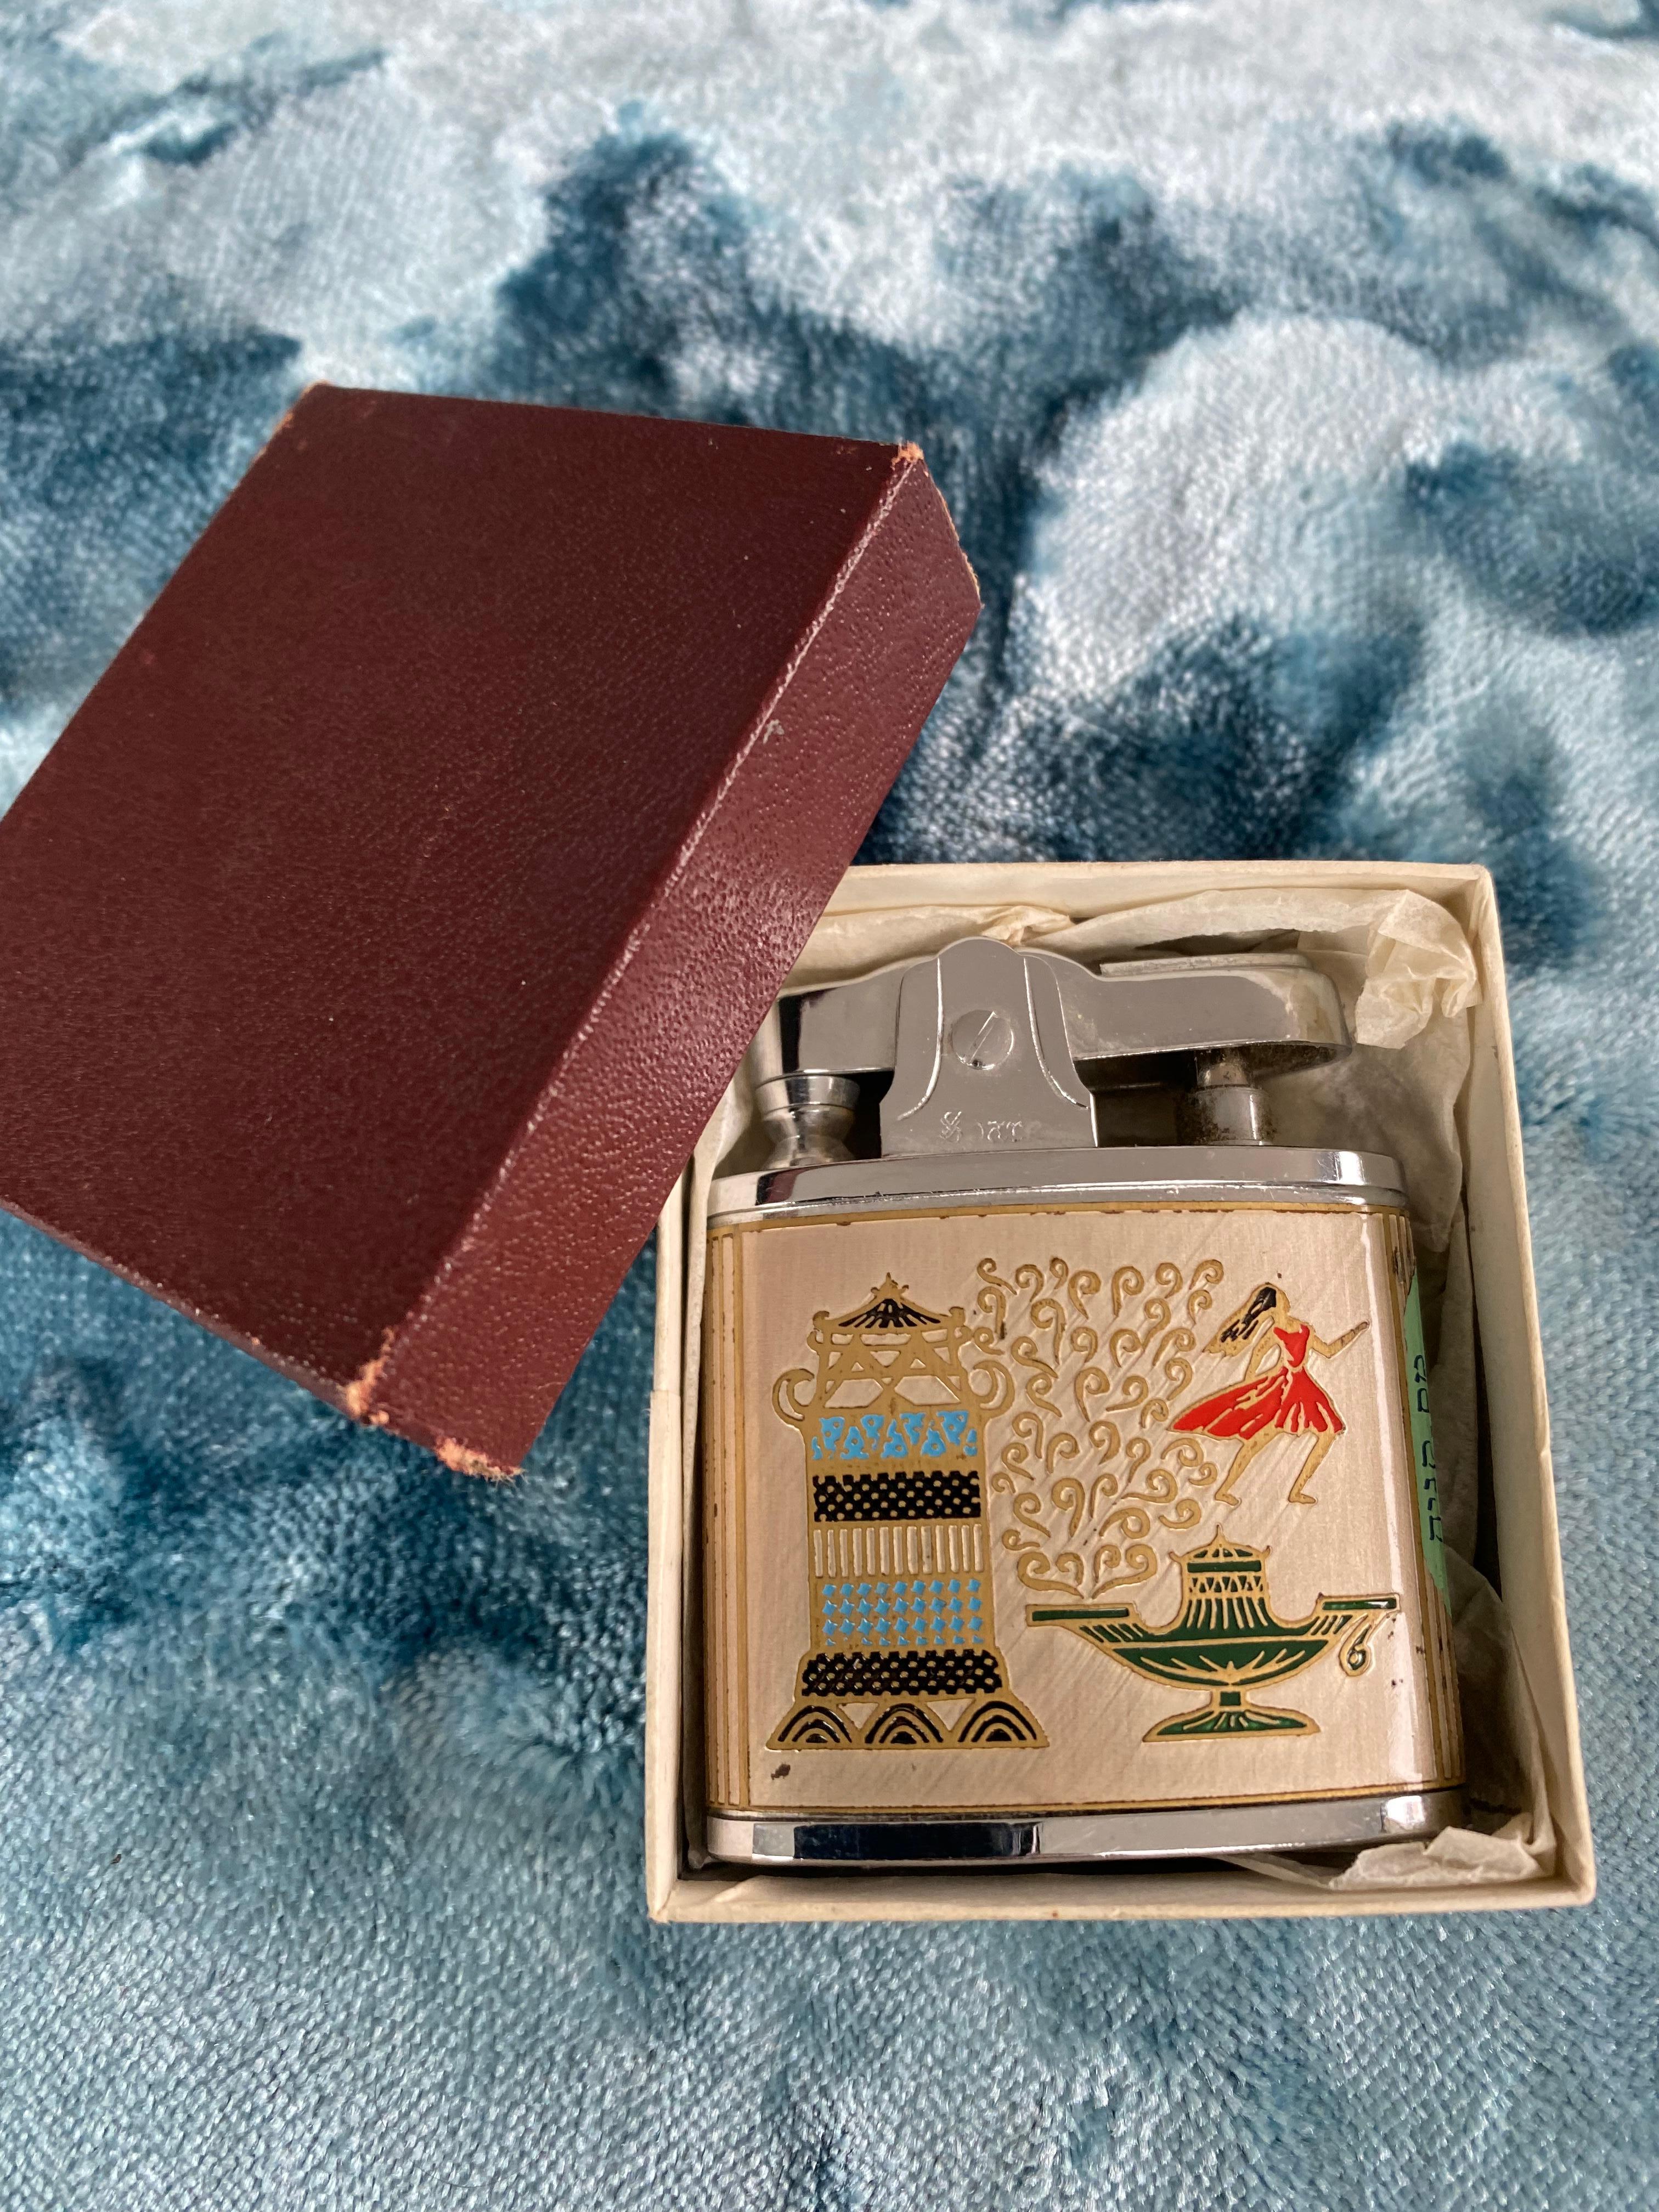 japanese lighter vintage